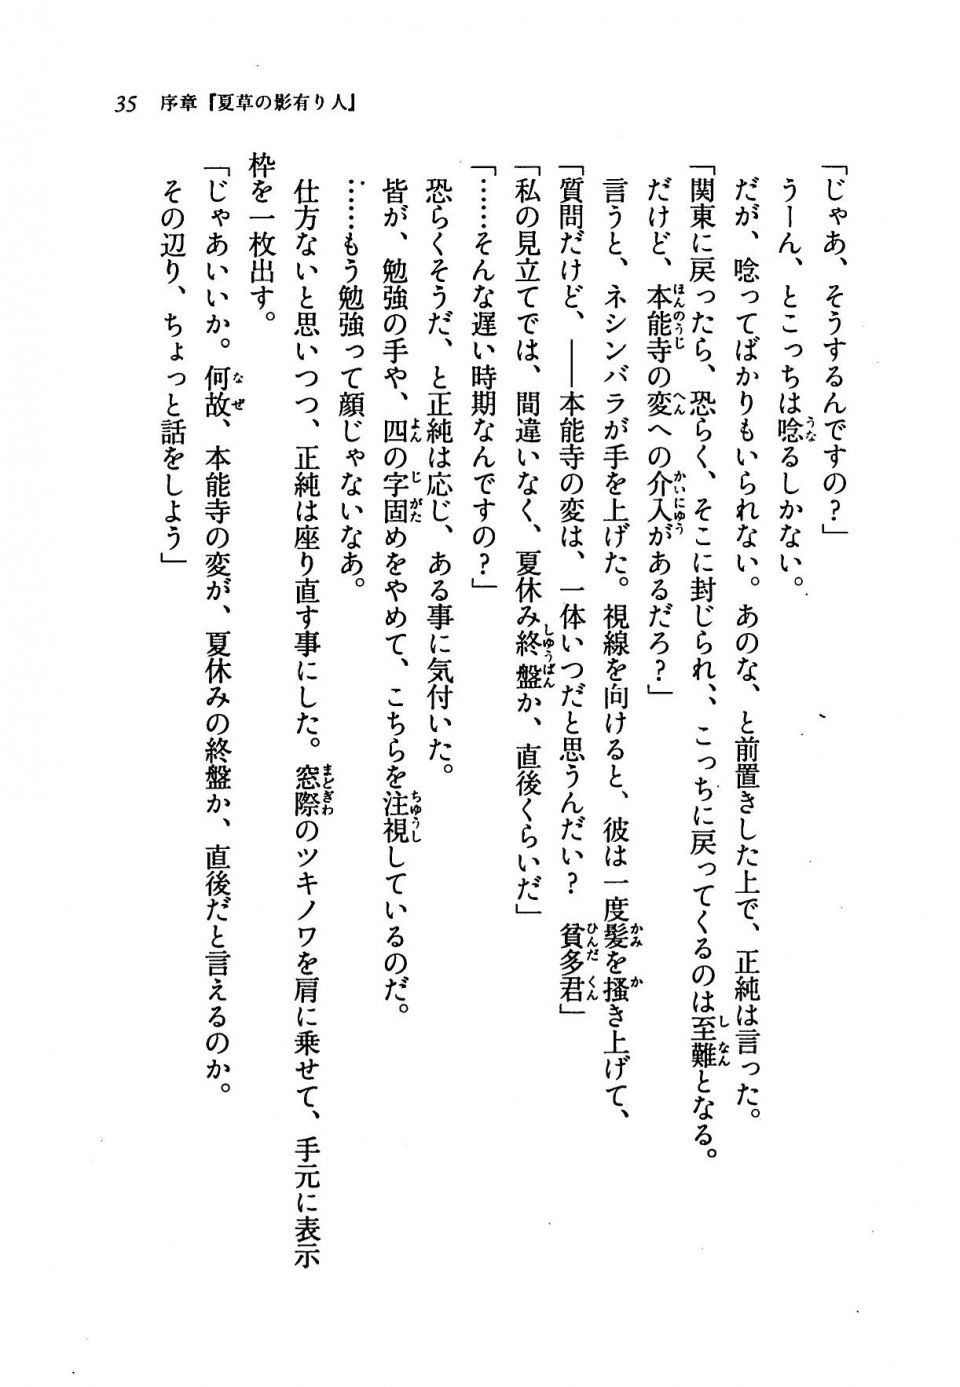 Kyoukai Senjou no Horizon LN Vol 19(8A) - Photo #35